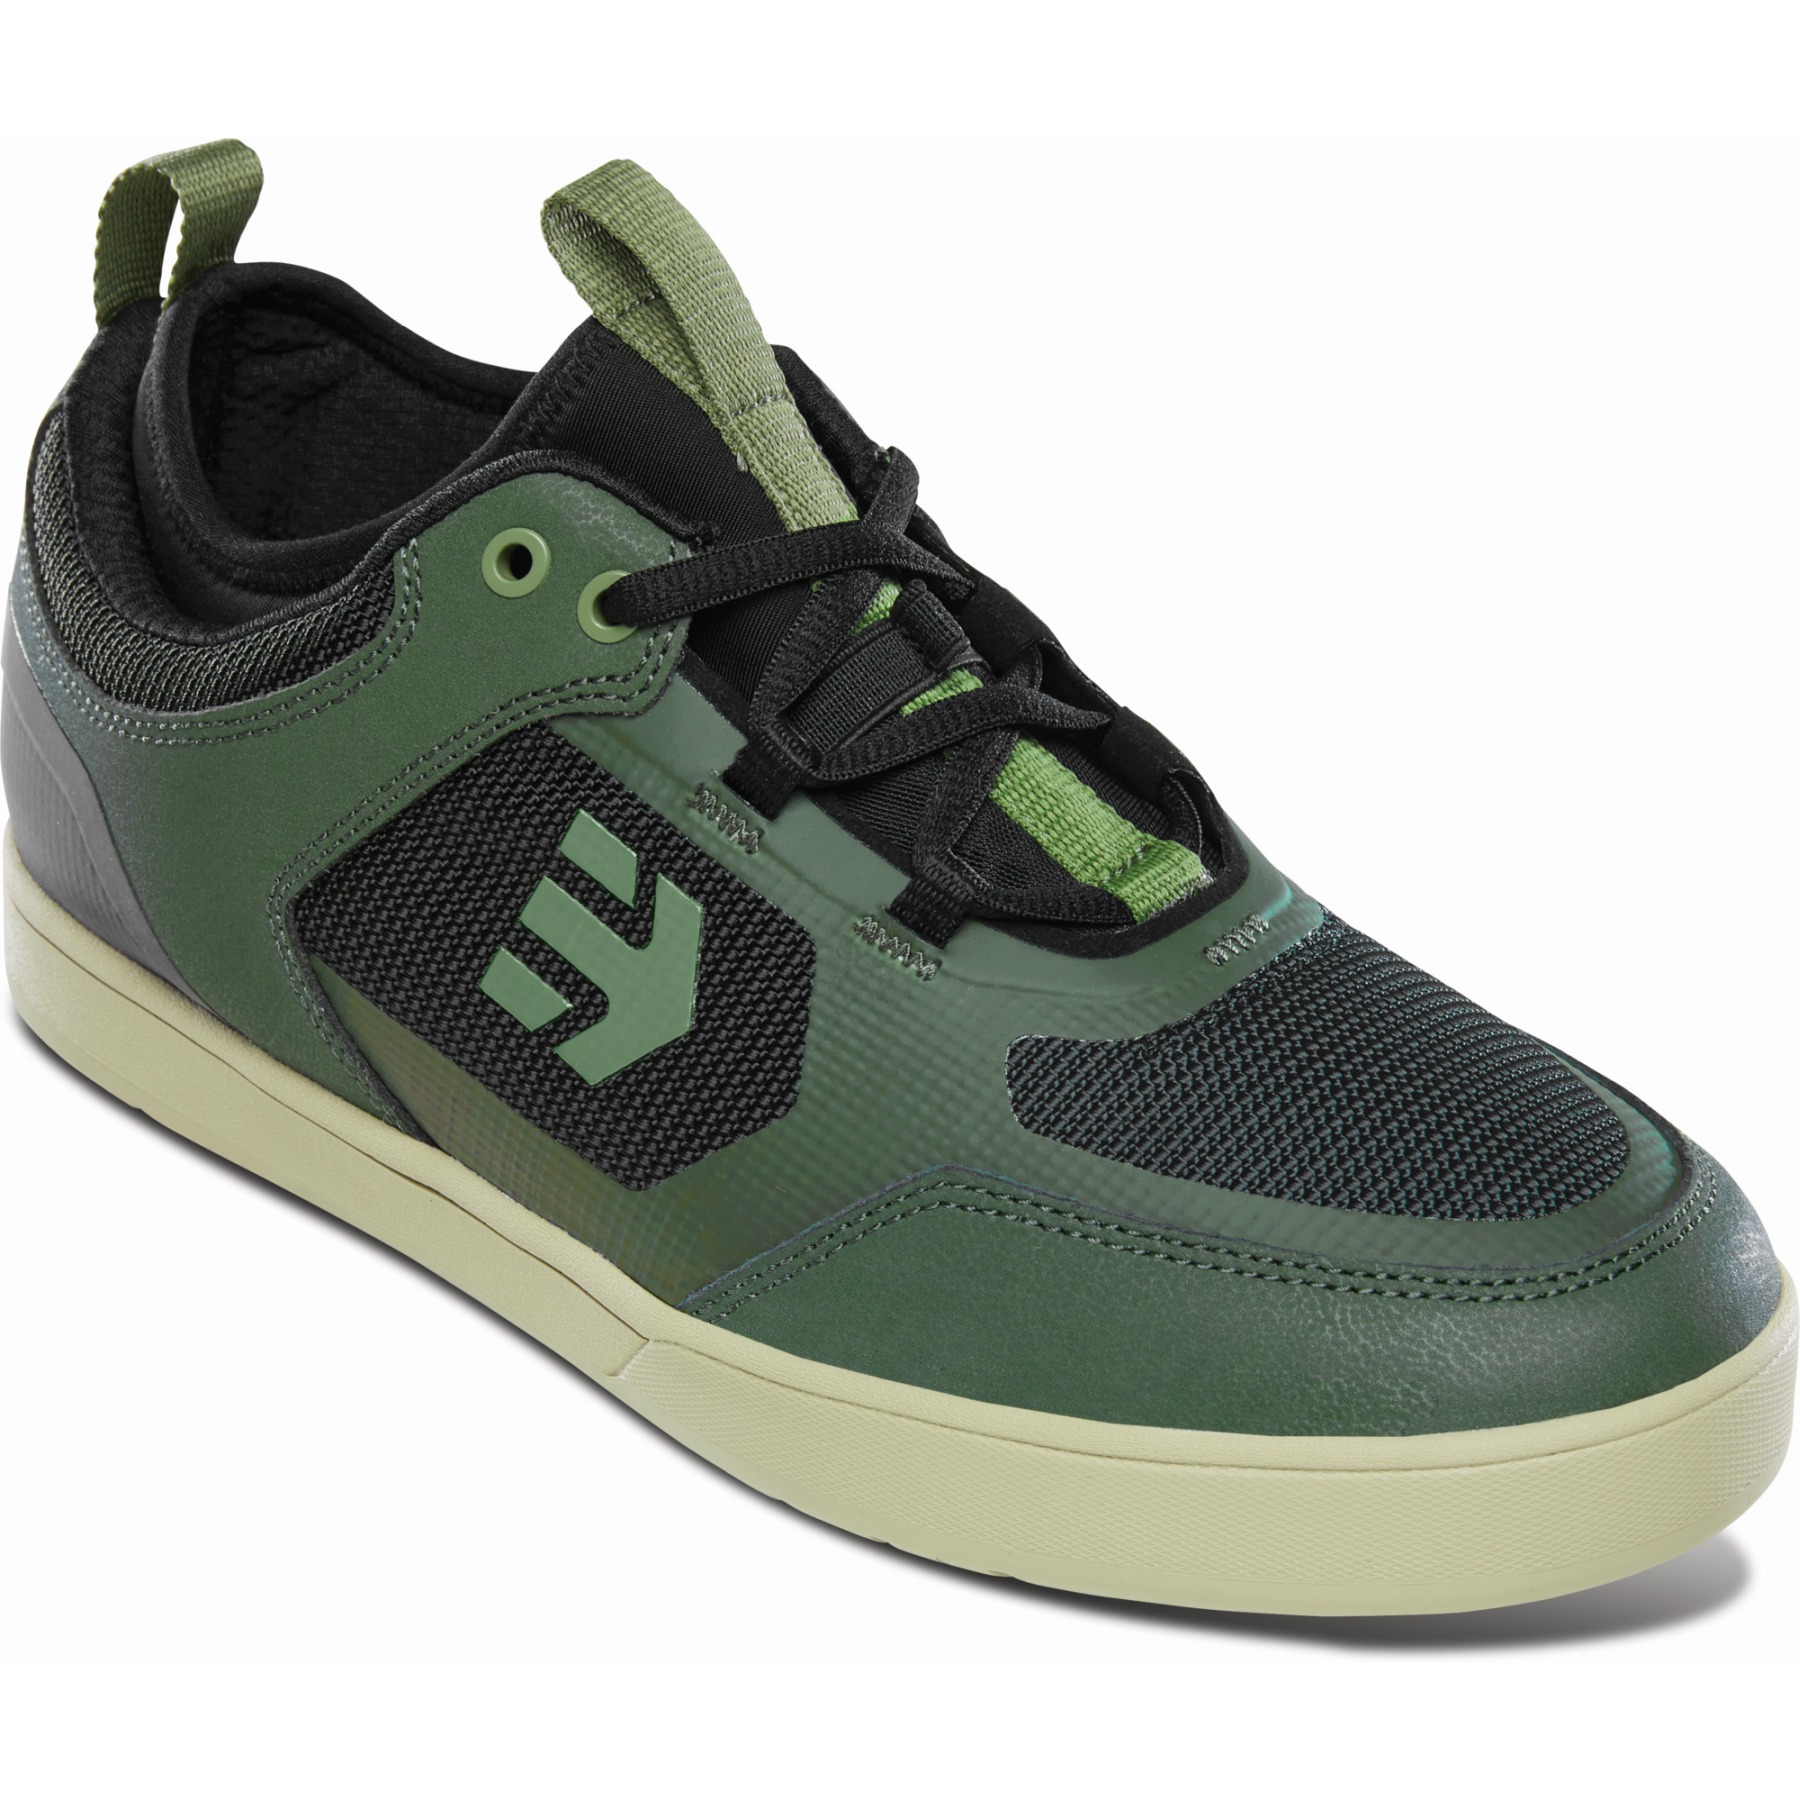 Produktbild von etnies Camber Pro MTB Schuhe - grün/schwarz